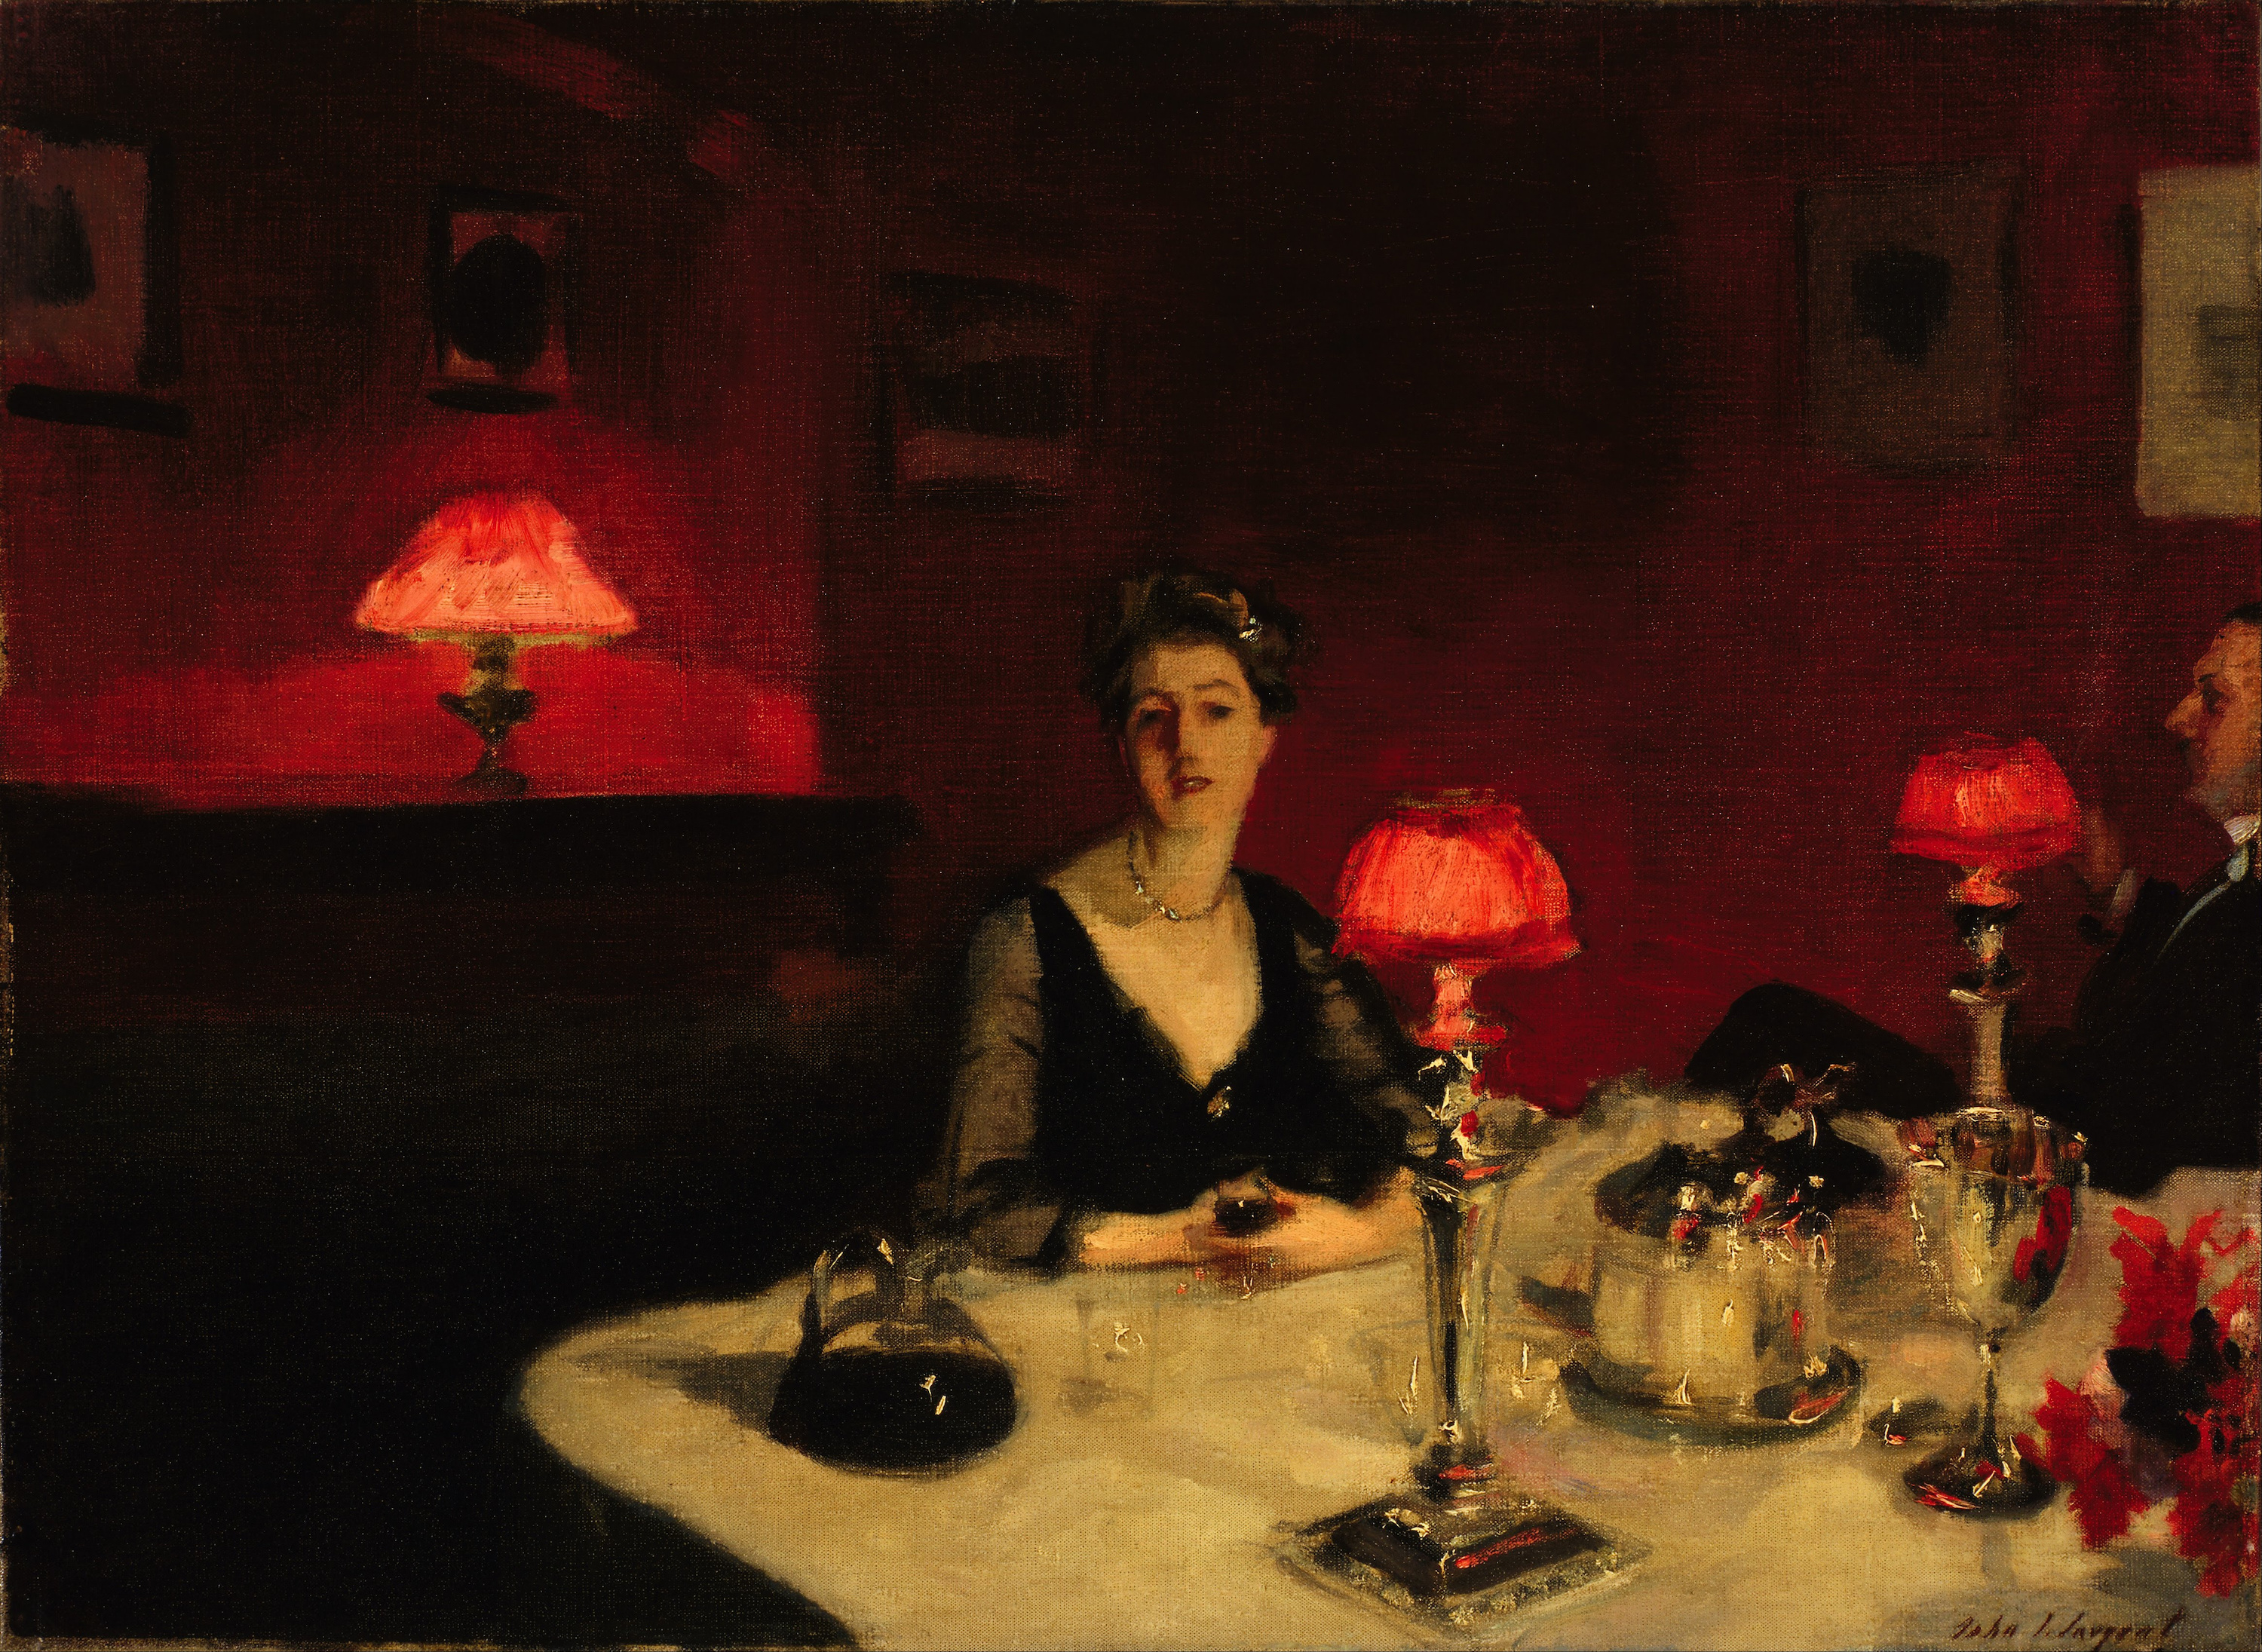 Le verre de porto (Une table à diner la nuit) by John Singer Sargent - 1884 - 51.4 x 66.7 cm de Young Museum